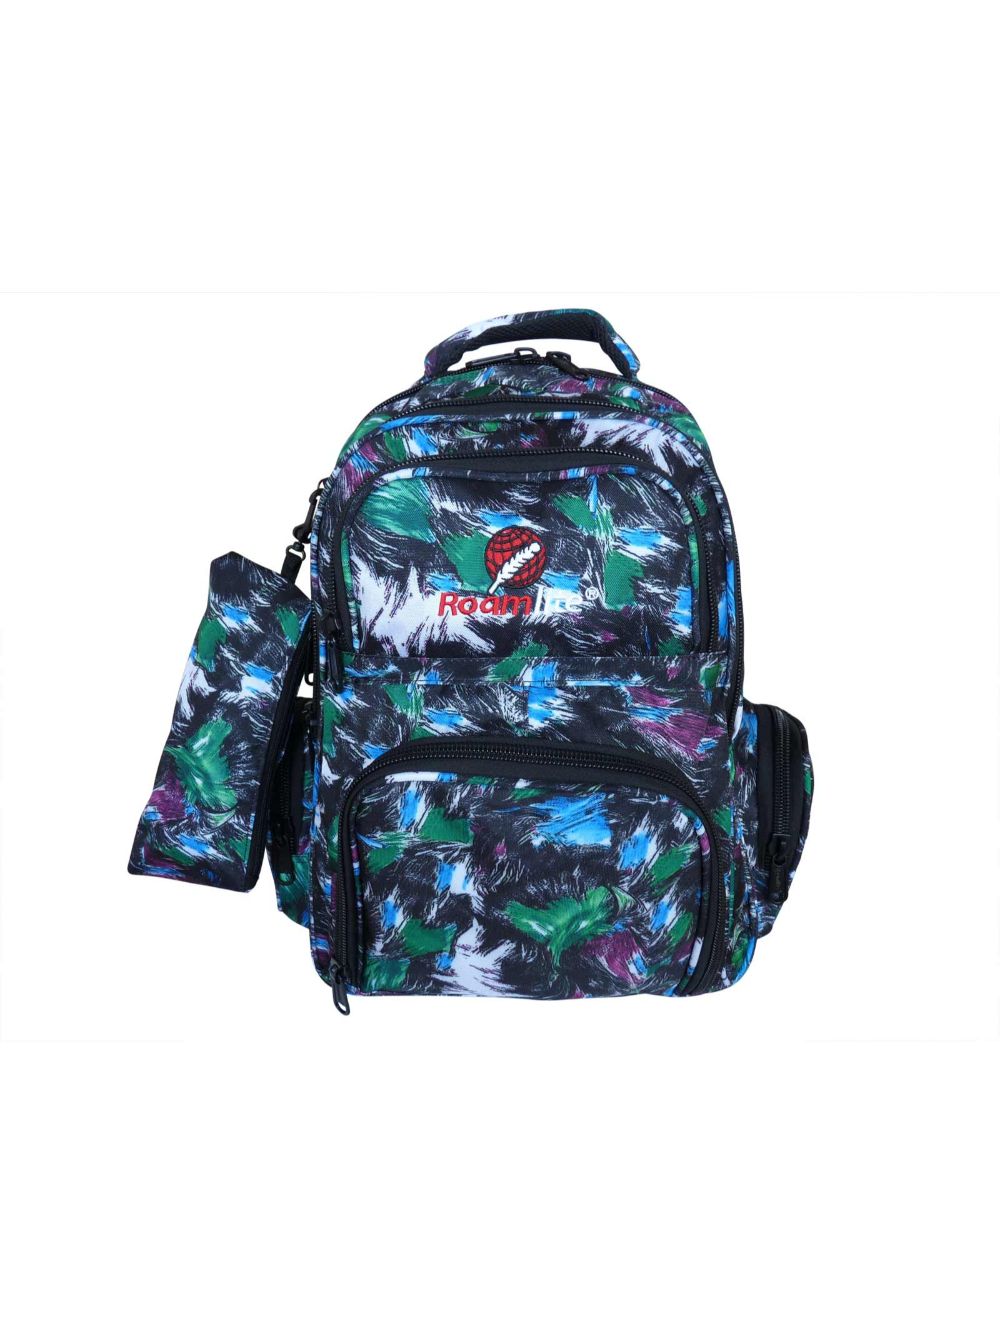 Roamlite Childrens Backpack Green Paint pattern RL839 front